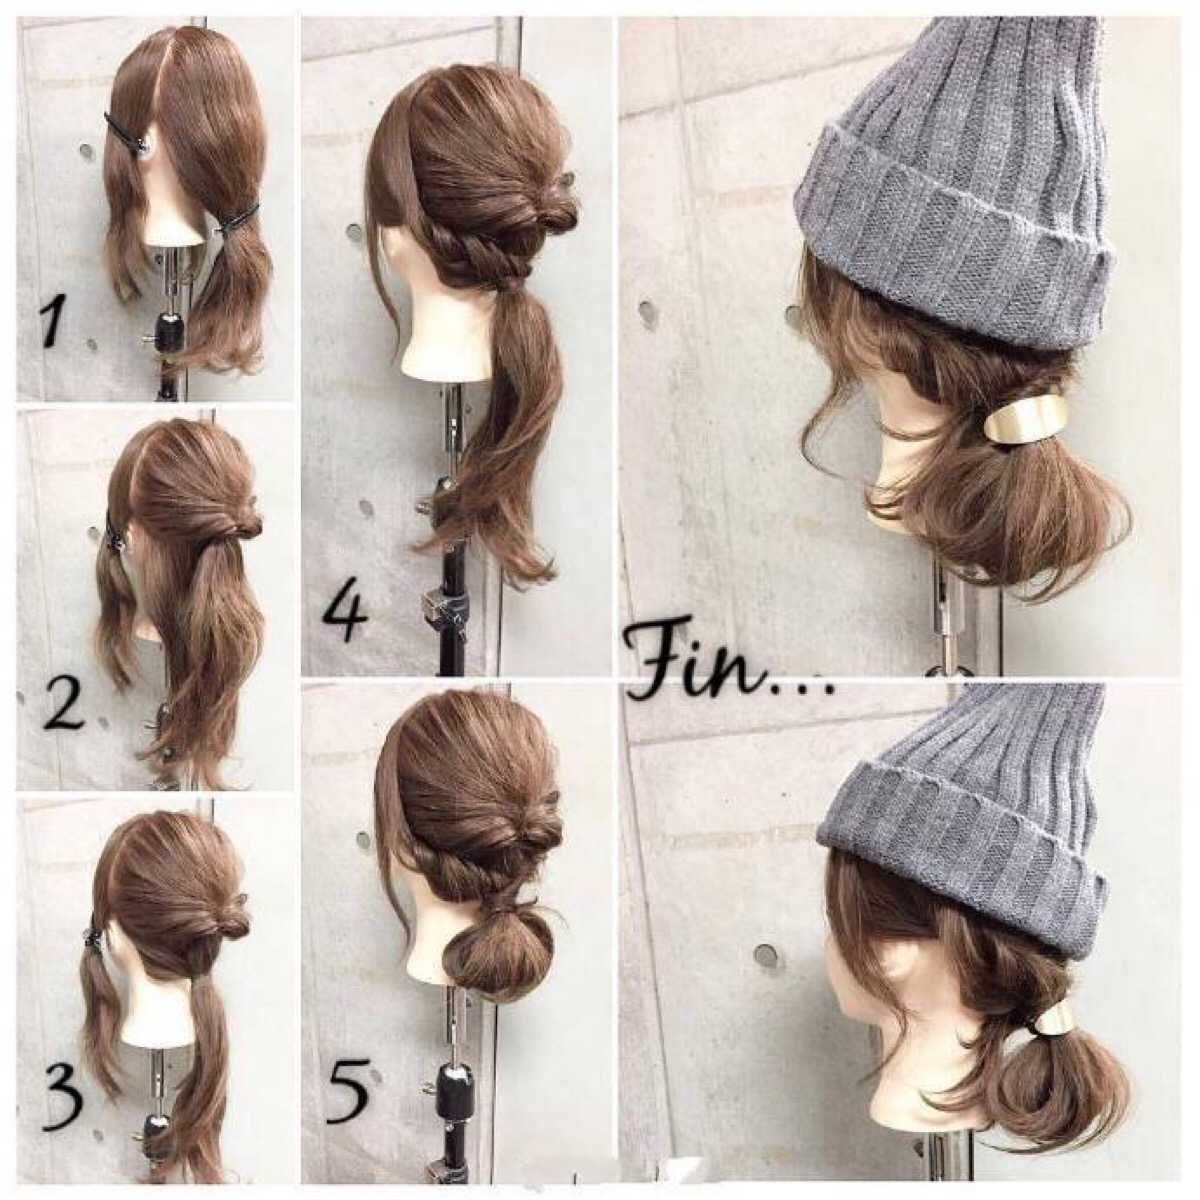 【编发教程】 冬季发型 戴帽子也要美美哒 简单美丽 一天一个发型